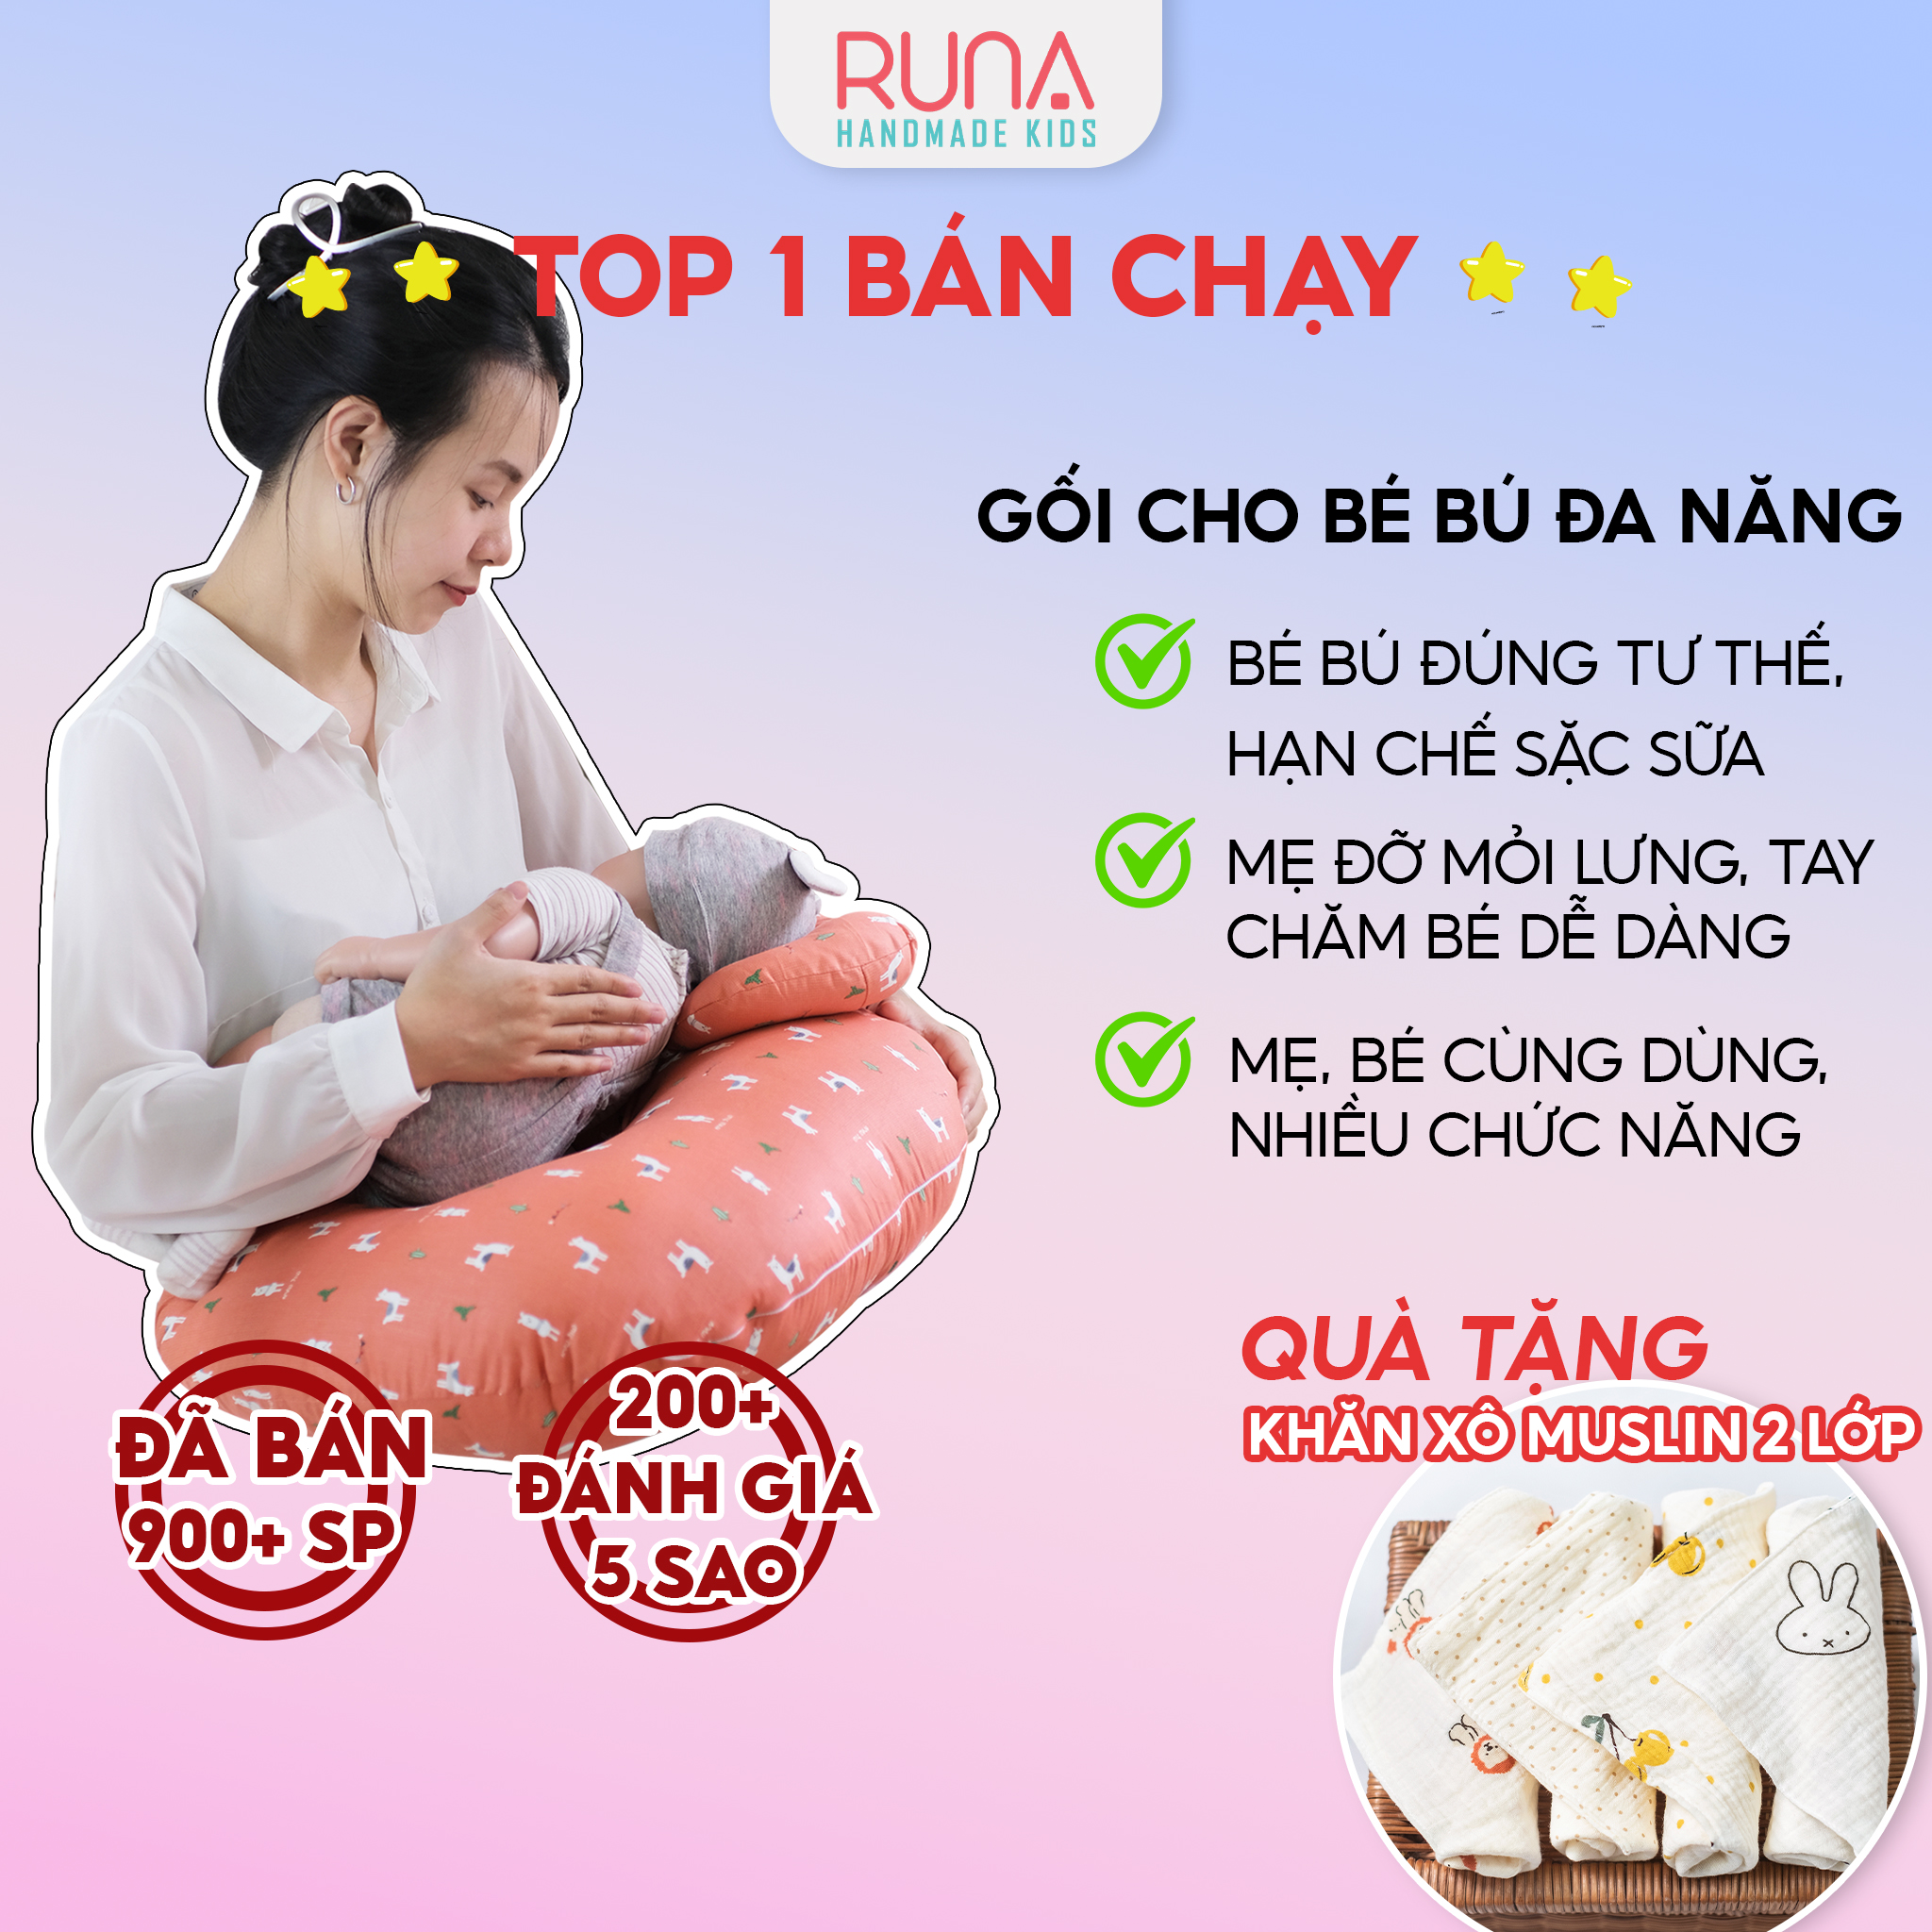 Gối cho bé bú đa năng cao cấp RUNA KIDS cotton Hàn mềm mịn thoáng mát an toàn cho bé hoạ tiết dễ thương